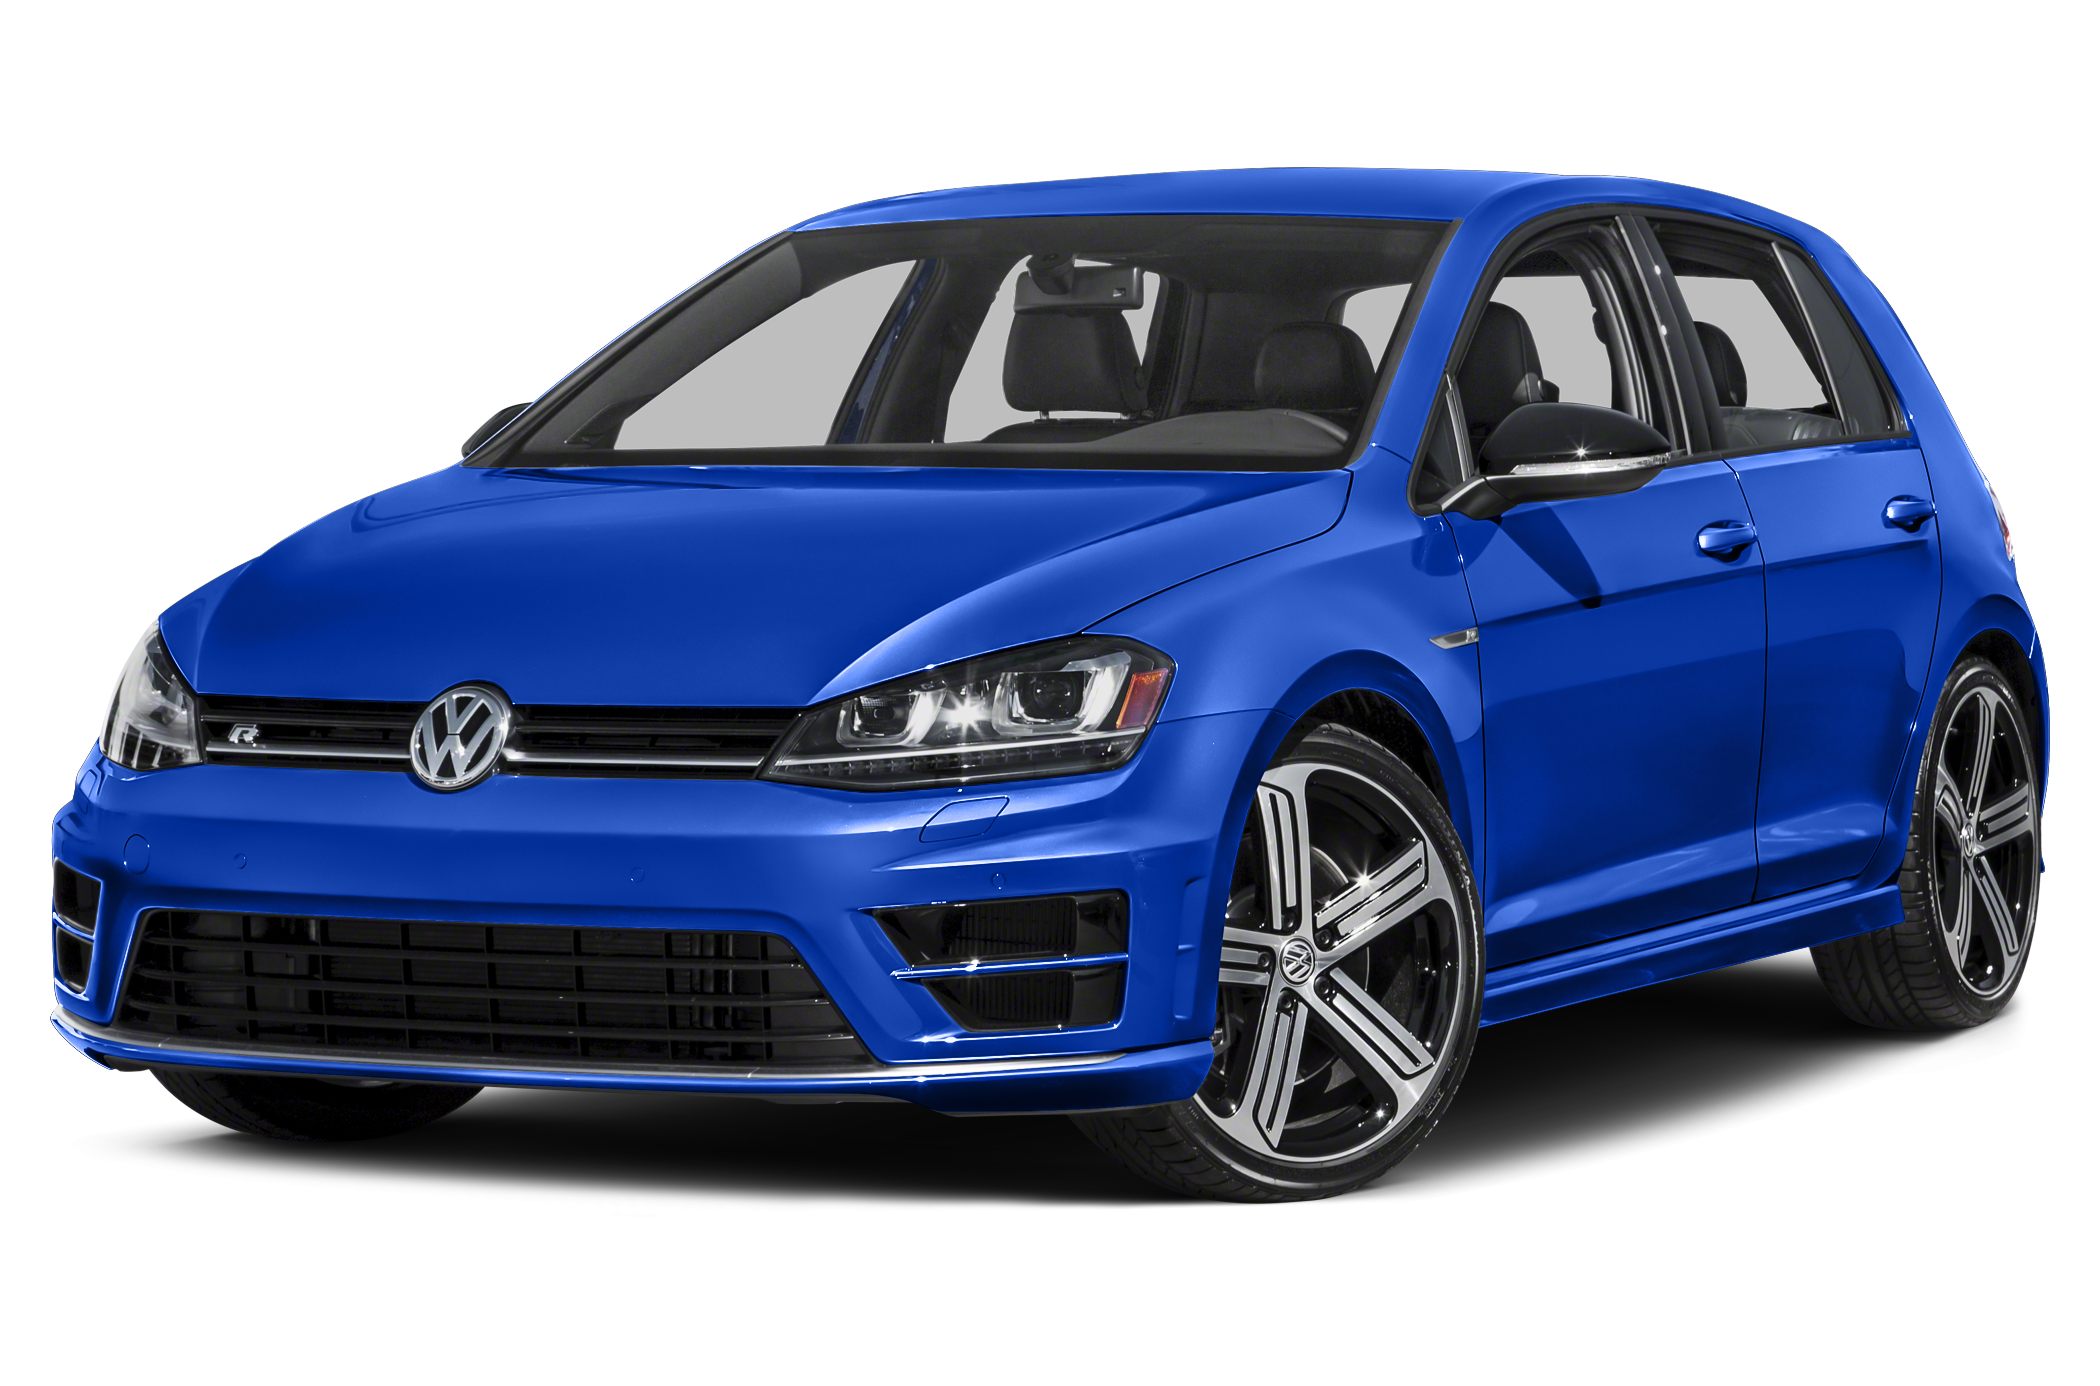 Volkswagen Golf R HD wallpapers, Desktop wallpaper - most viewed